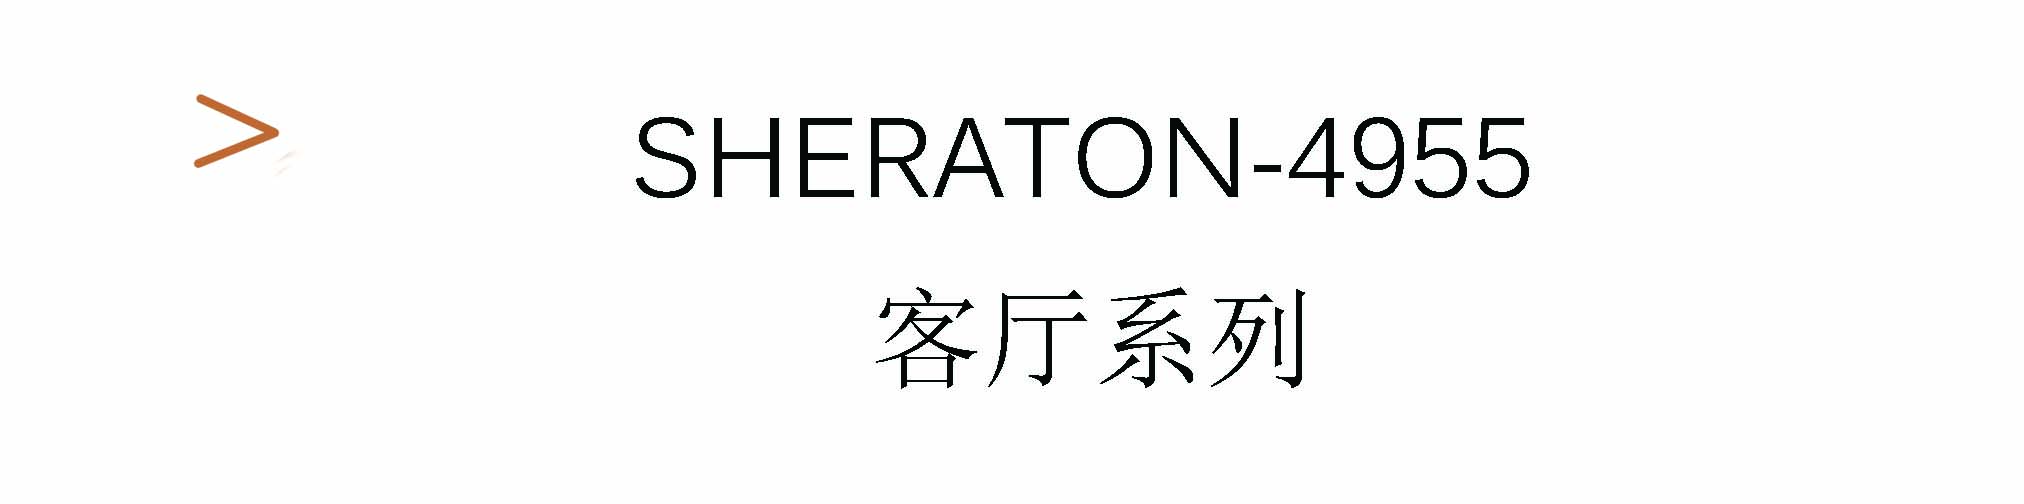 Sheraton-4955